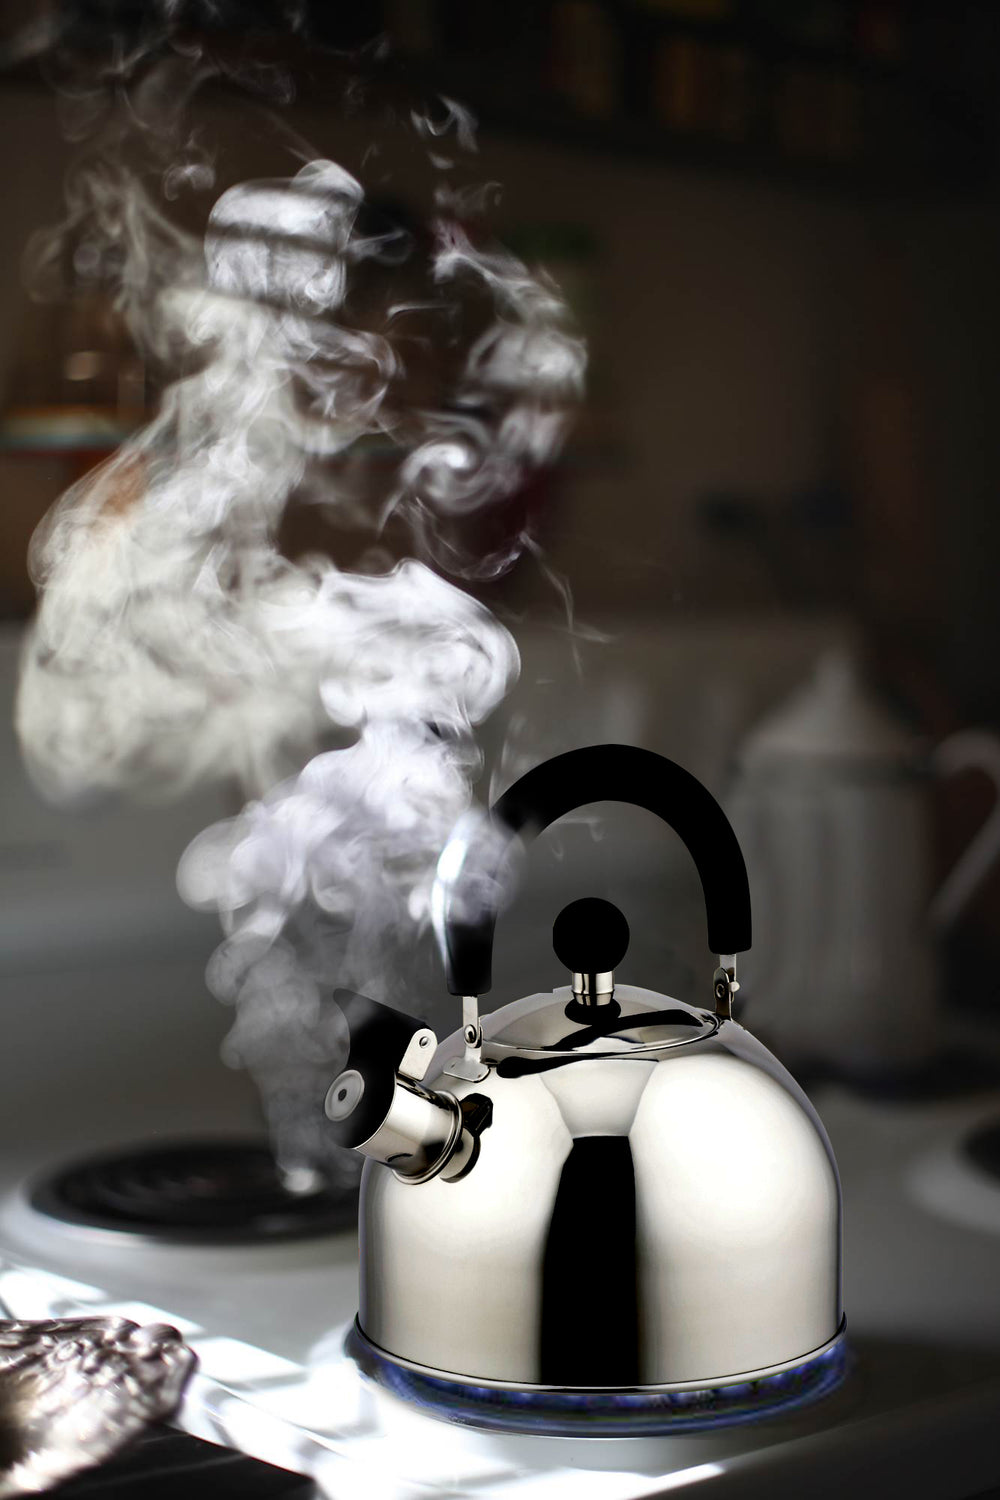 2.5 Liter Whistling Stainless Steel Tea Pot,Tea Kettle for Stove